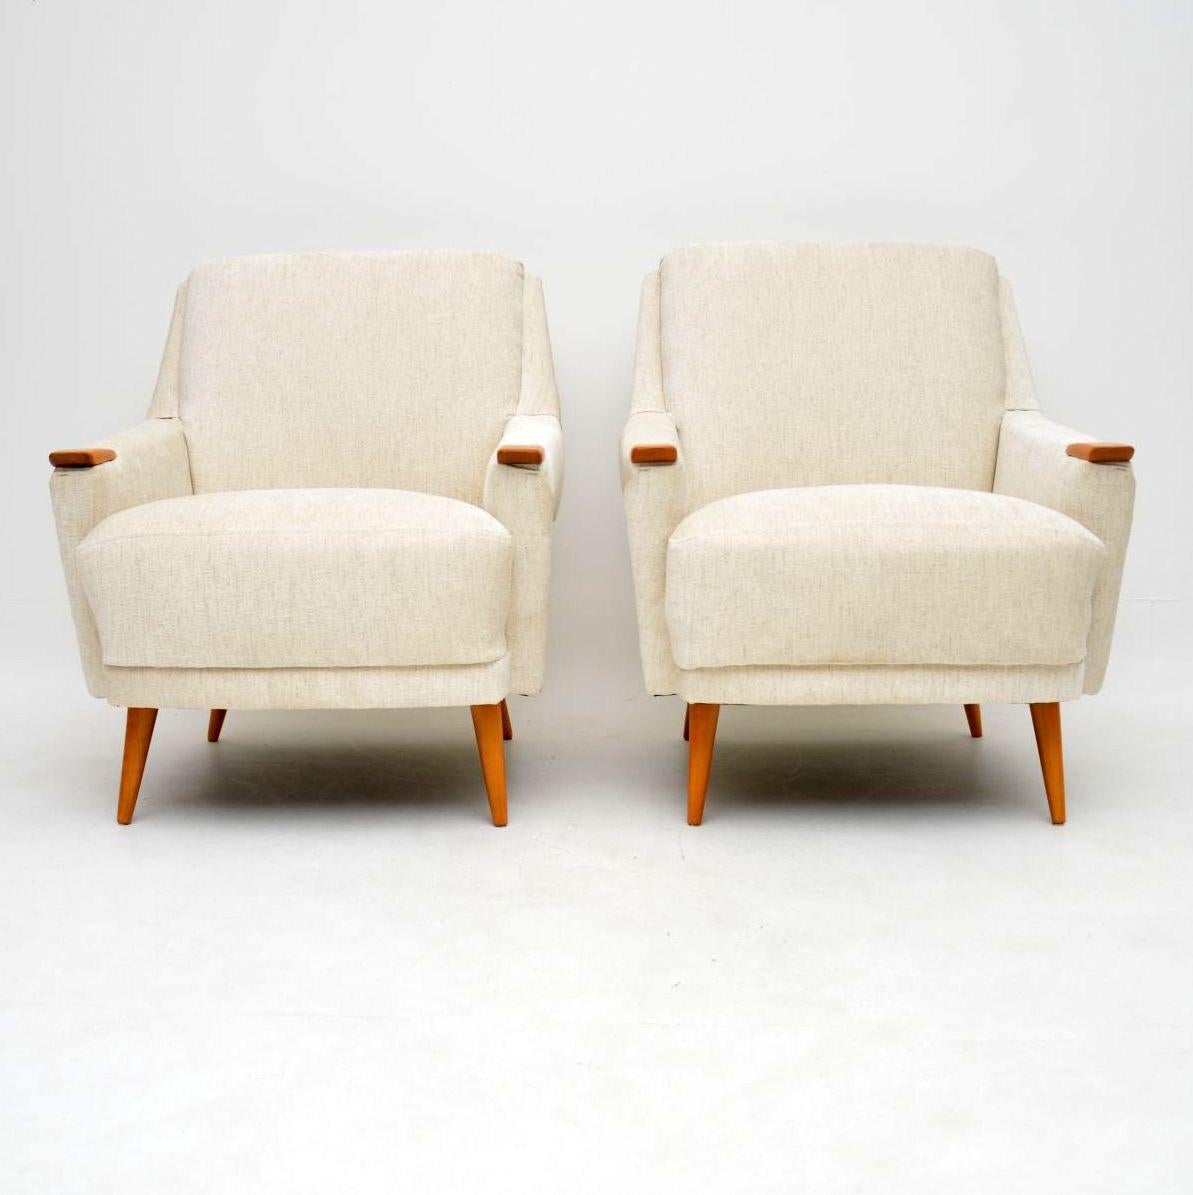 Ein spektakuläres Paar dänischer Vintage-Sessel aus den 1950er-1960er Jahren. Sie sind von erstaunlicher Qualität, sehr bequem und in absolut hervorragendem Zustand. Wir haben die Armlehnen und die Beine entlacken und neu polieren lassen, um einen